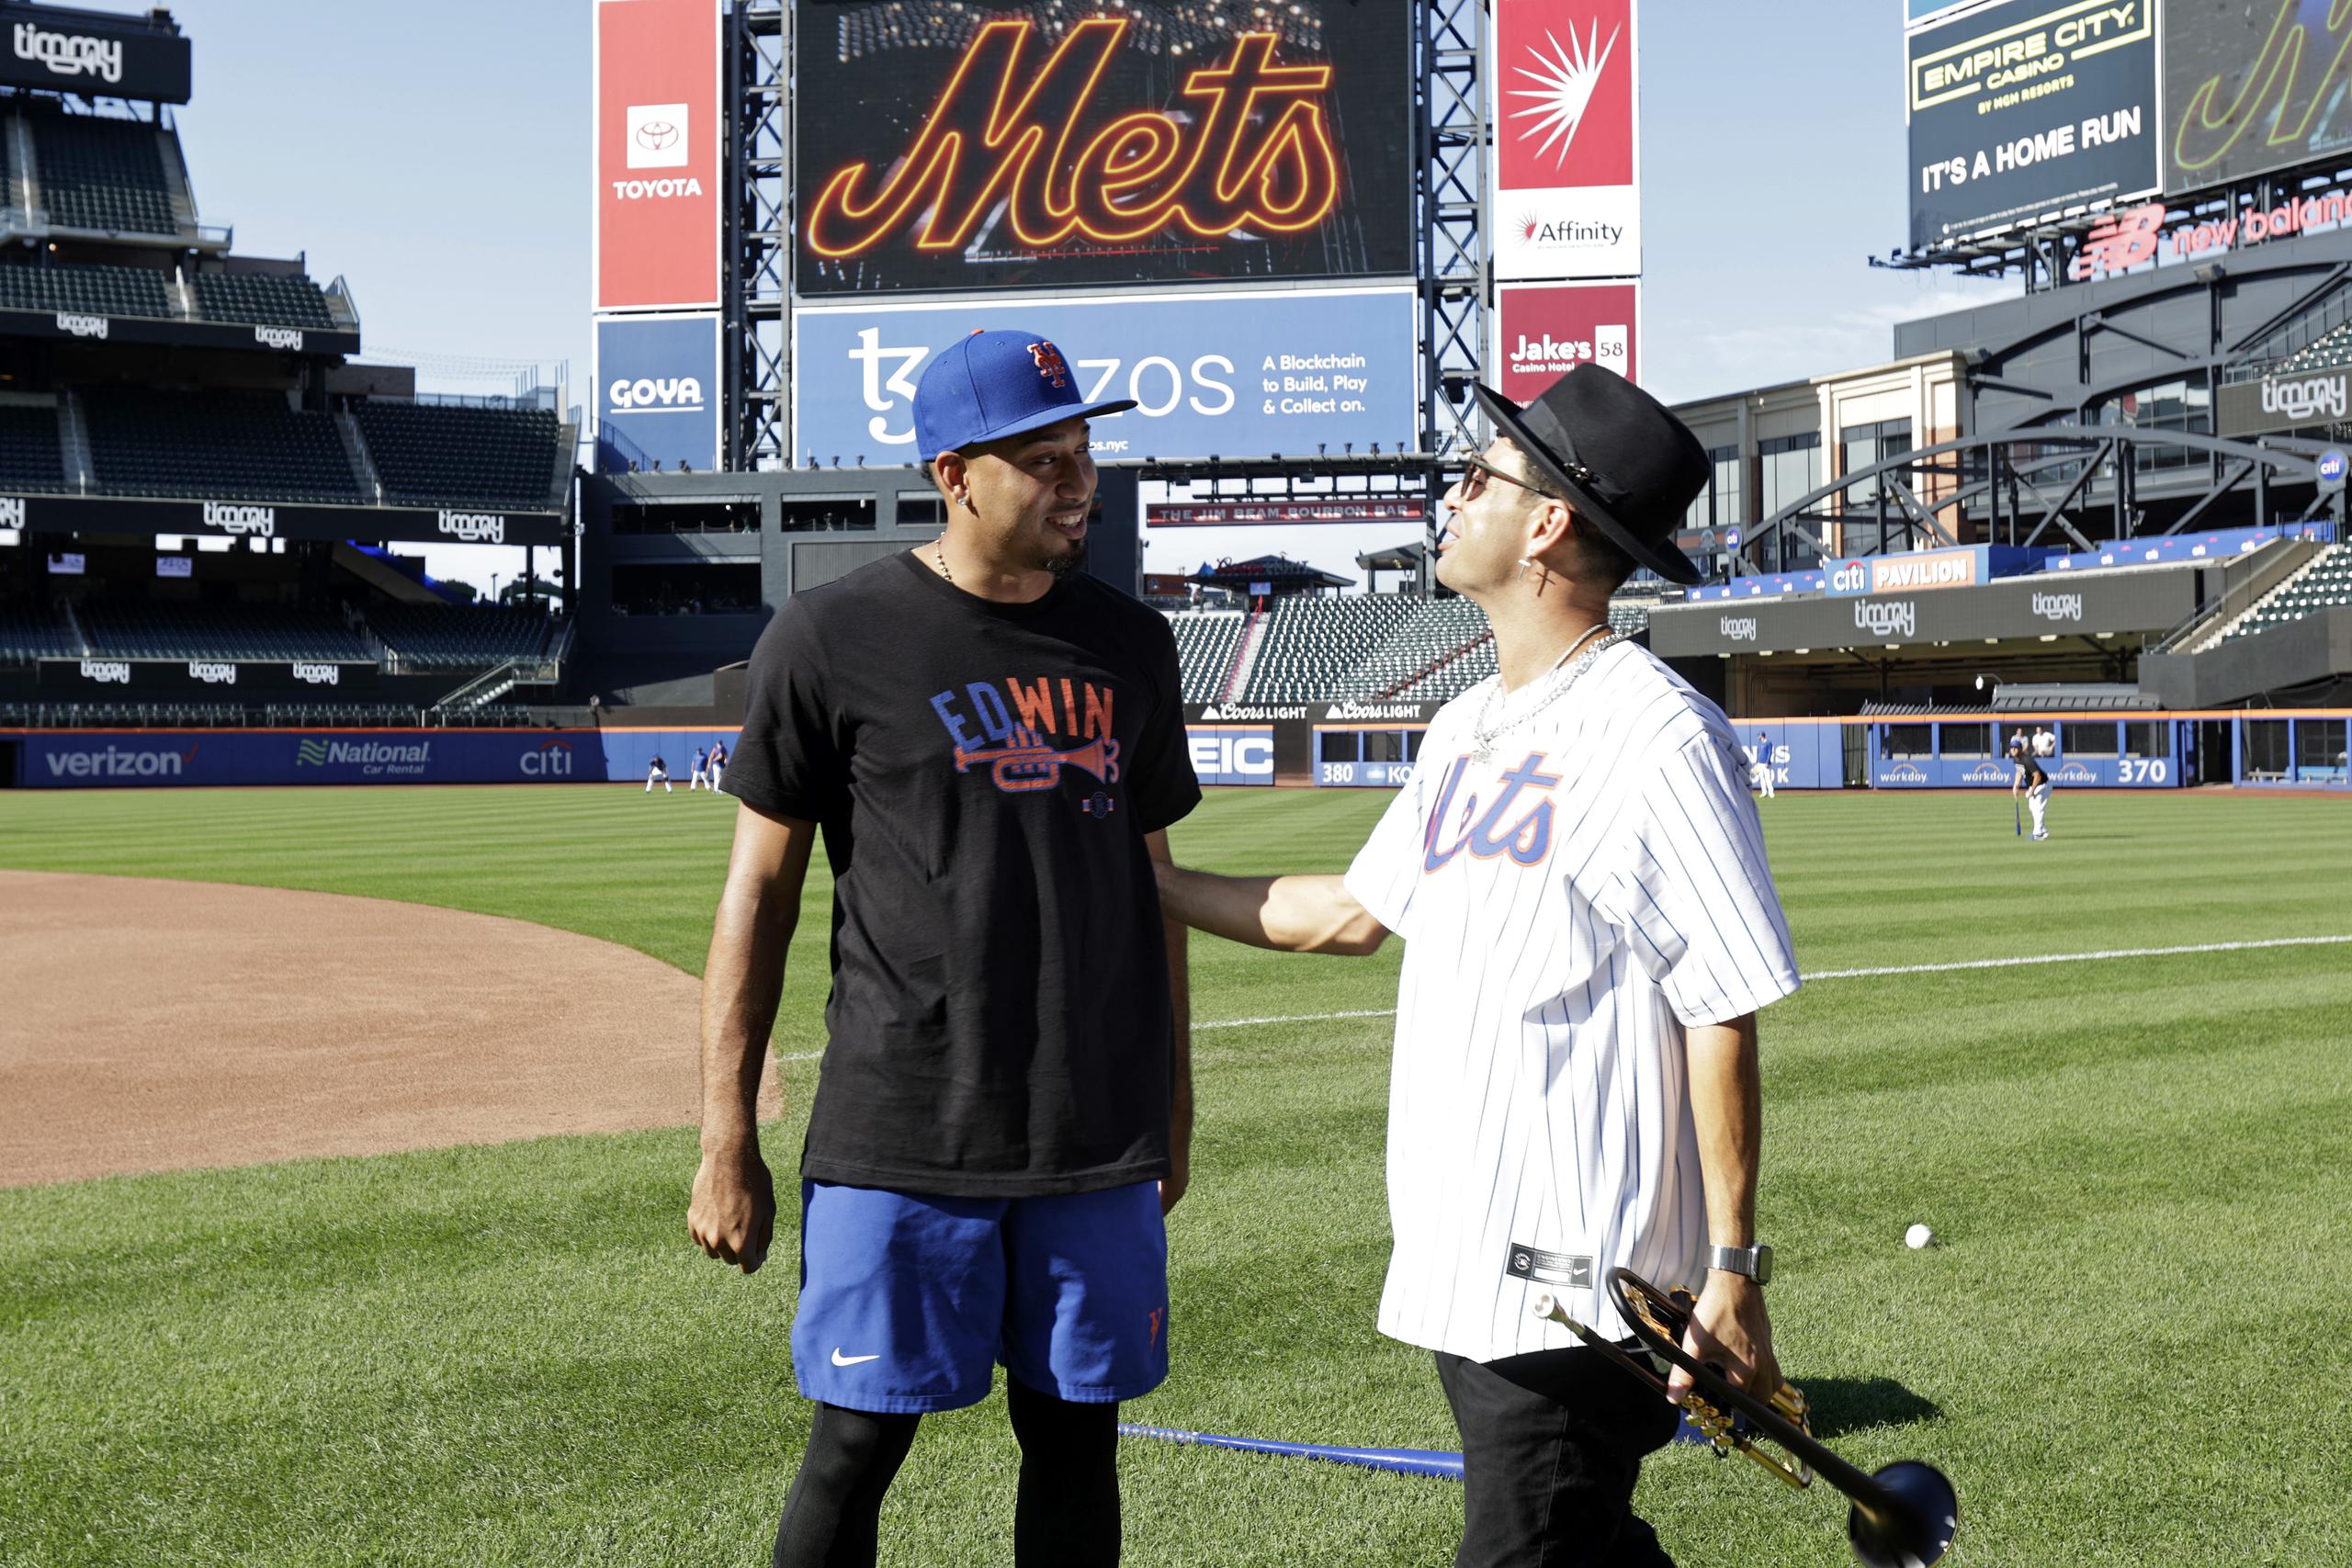 El artista Timmy Trumpet, quien interpreta el tema que el boricua Edwin Díaz utiliza para entrar a salvar juegos, conversa con Sugar antes del encuentro del martes contra los Dodgers de Los Angeles.